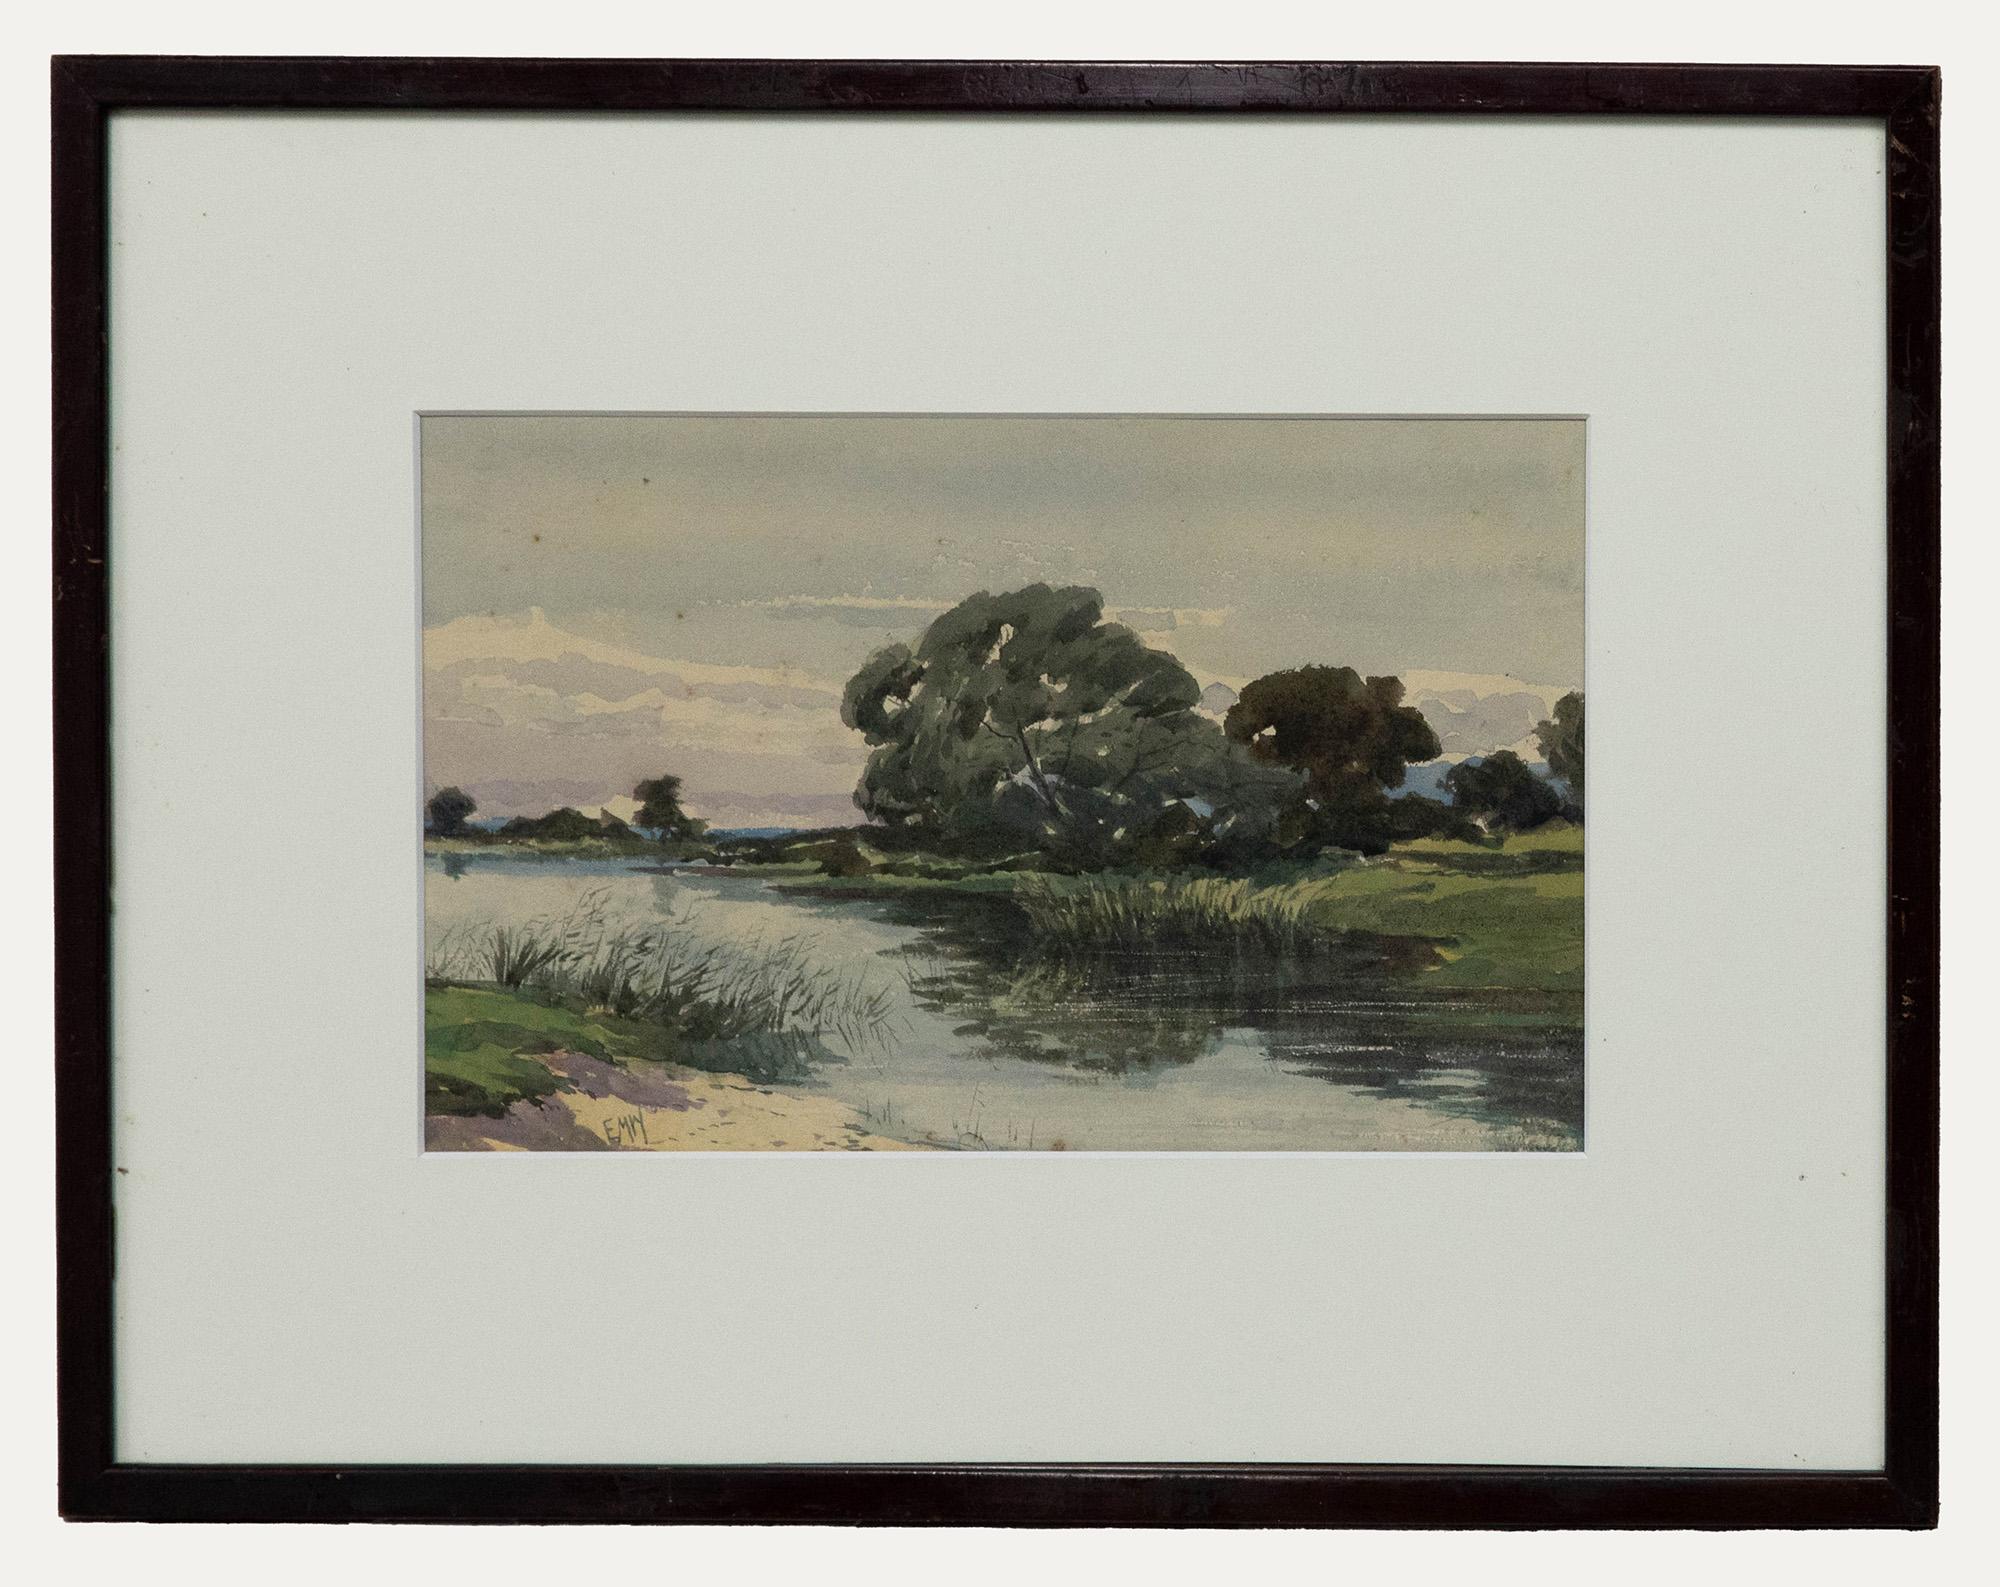 Edmund Wimperis Landscape Art - Edmund Morison Wimperis (1835-1900) - Late 19th Century Watercolour, Quiet River